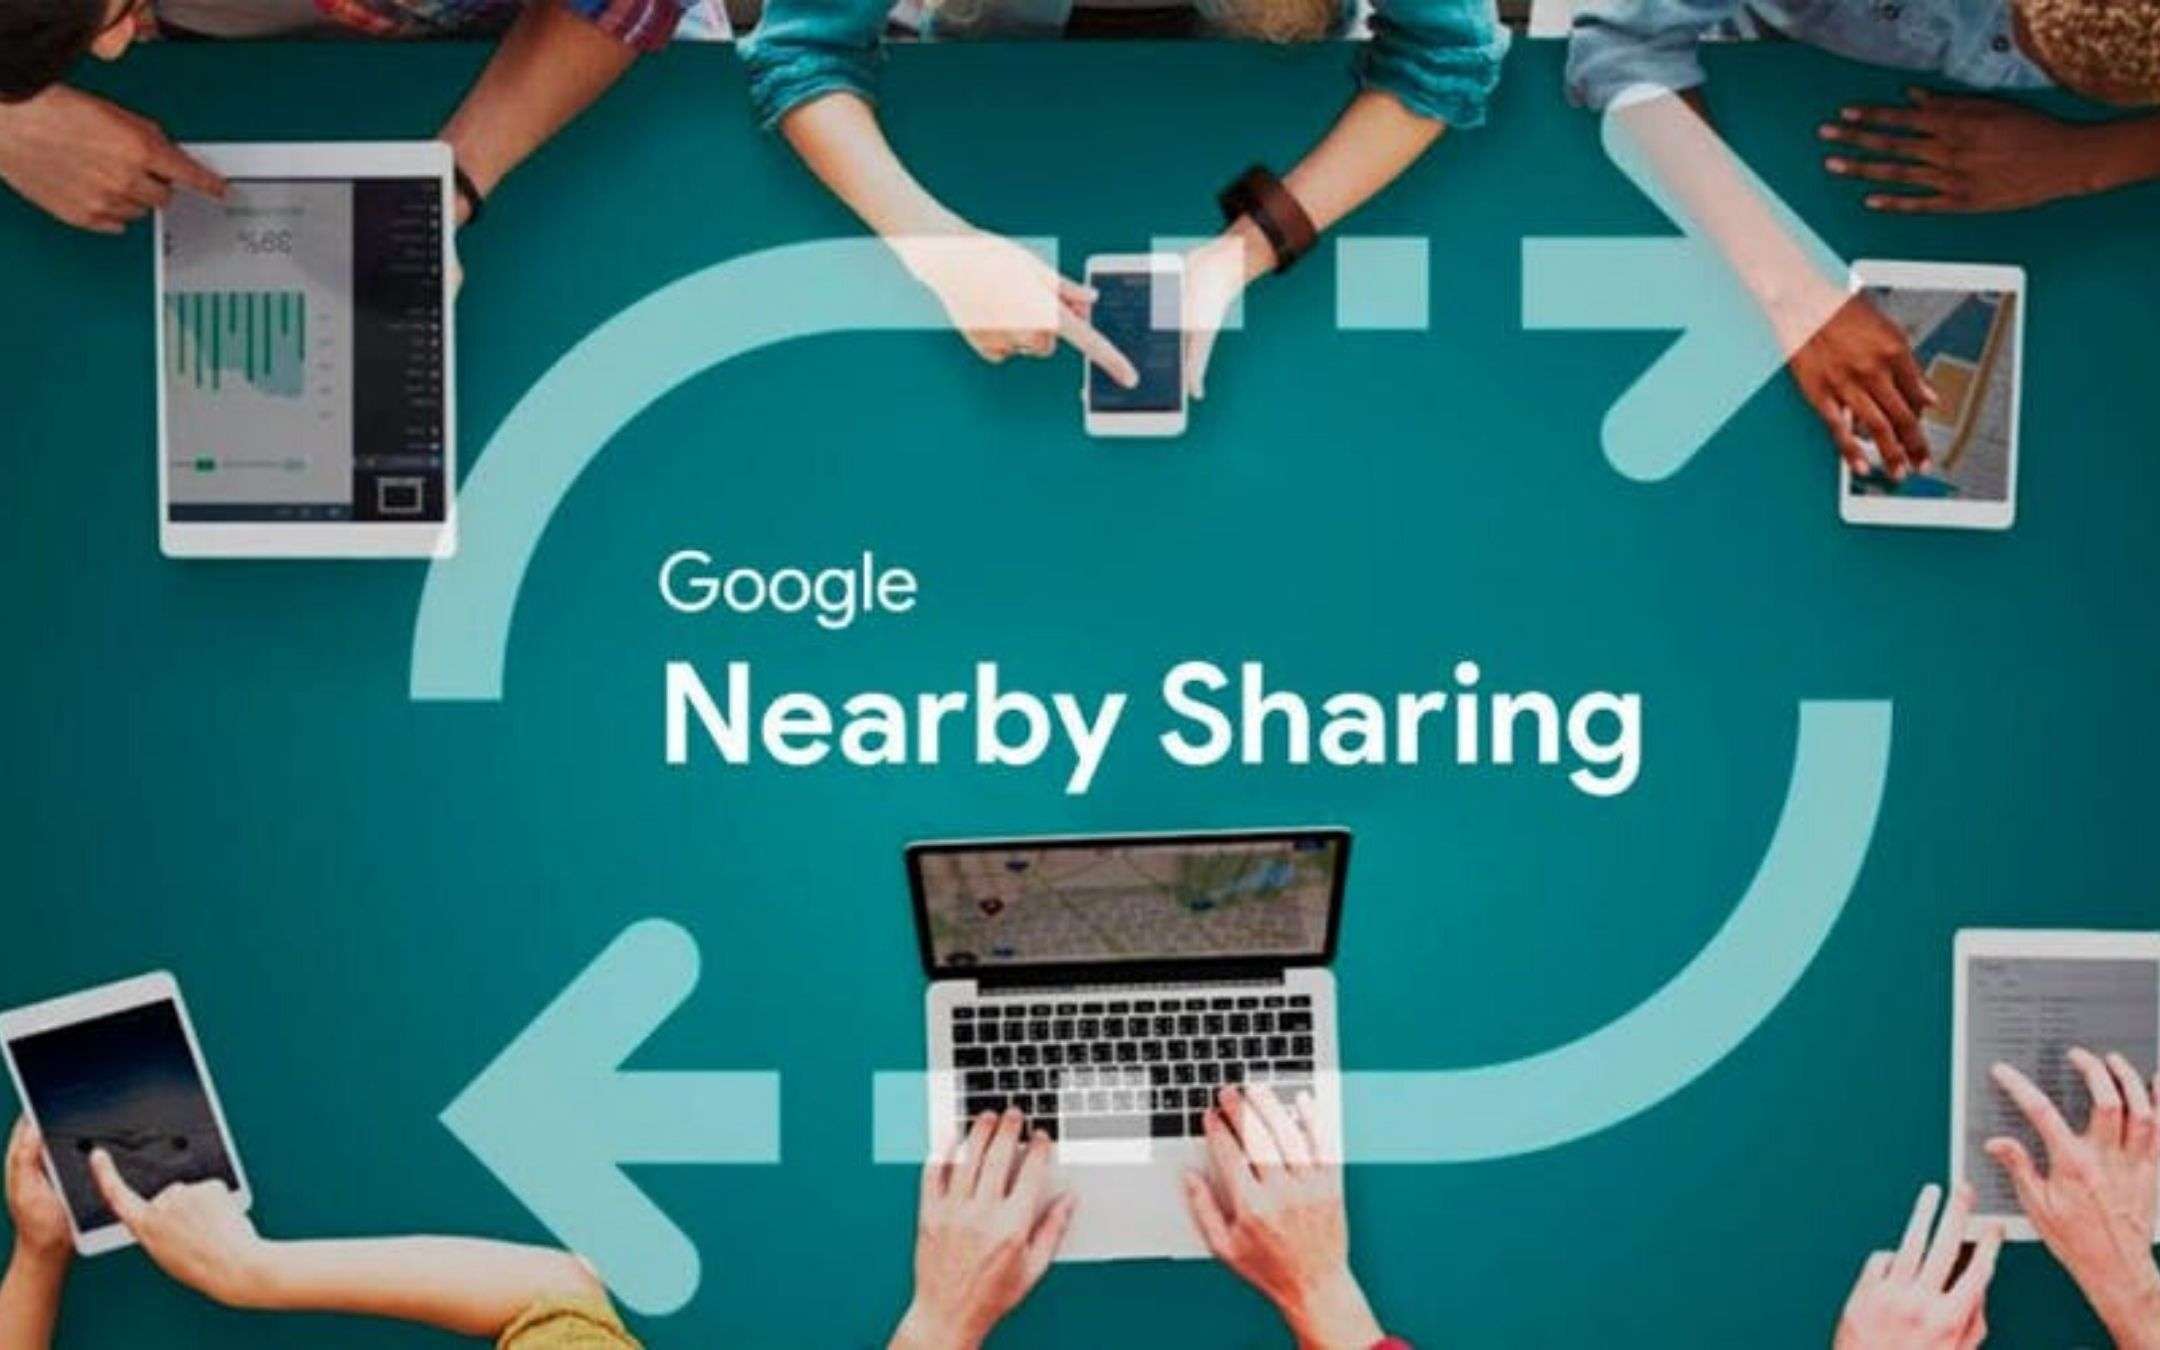 Google Nearby Share in arrivo ad agosto, pare